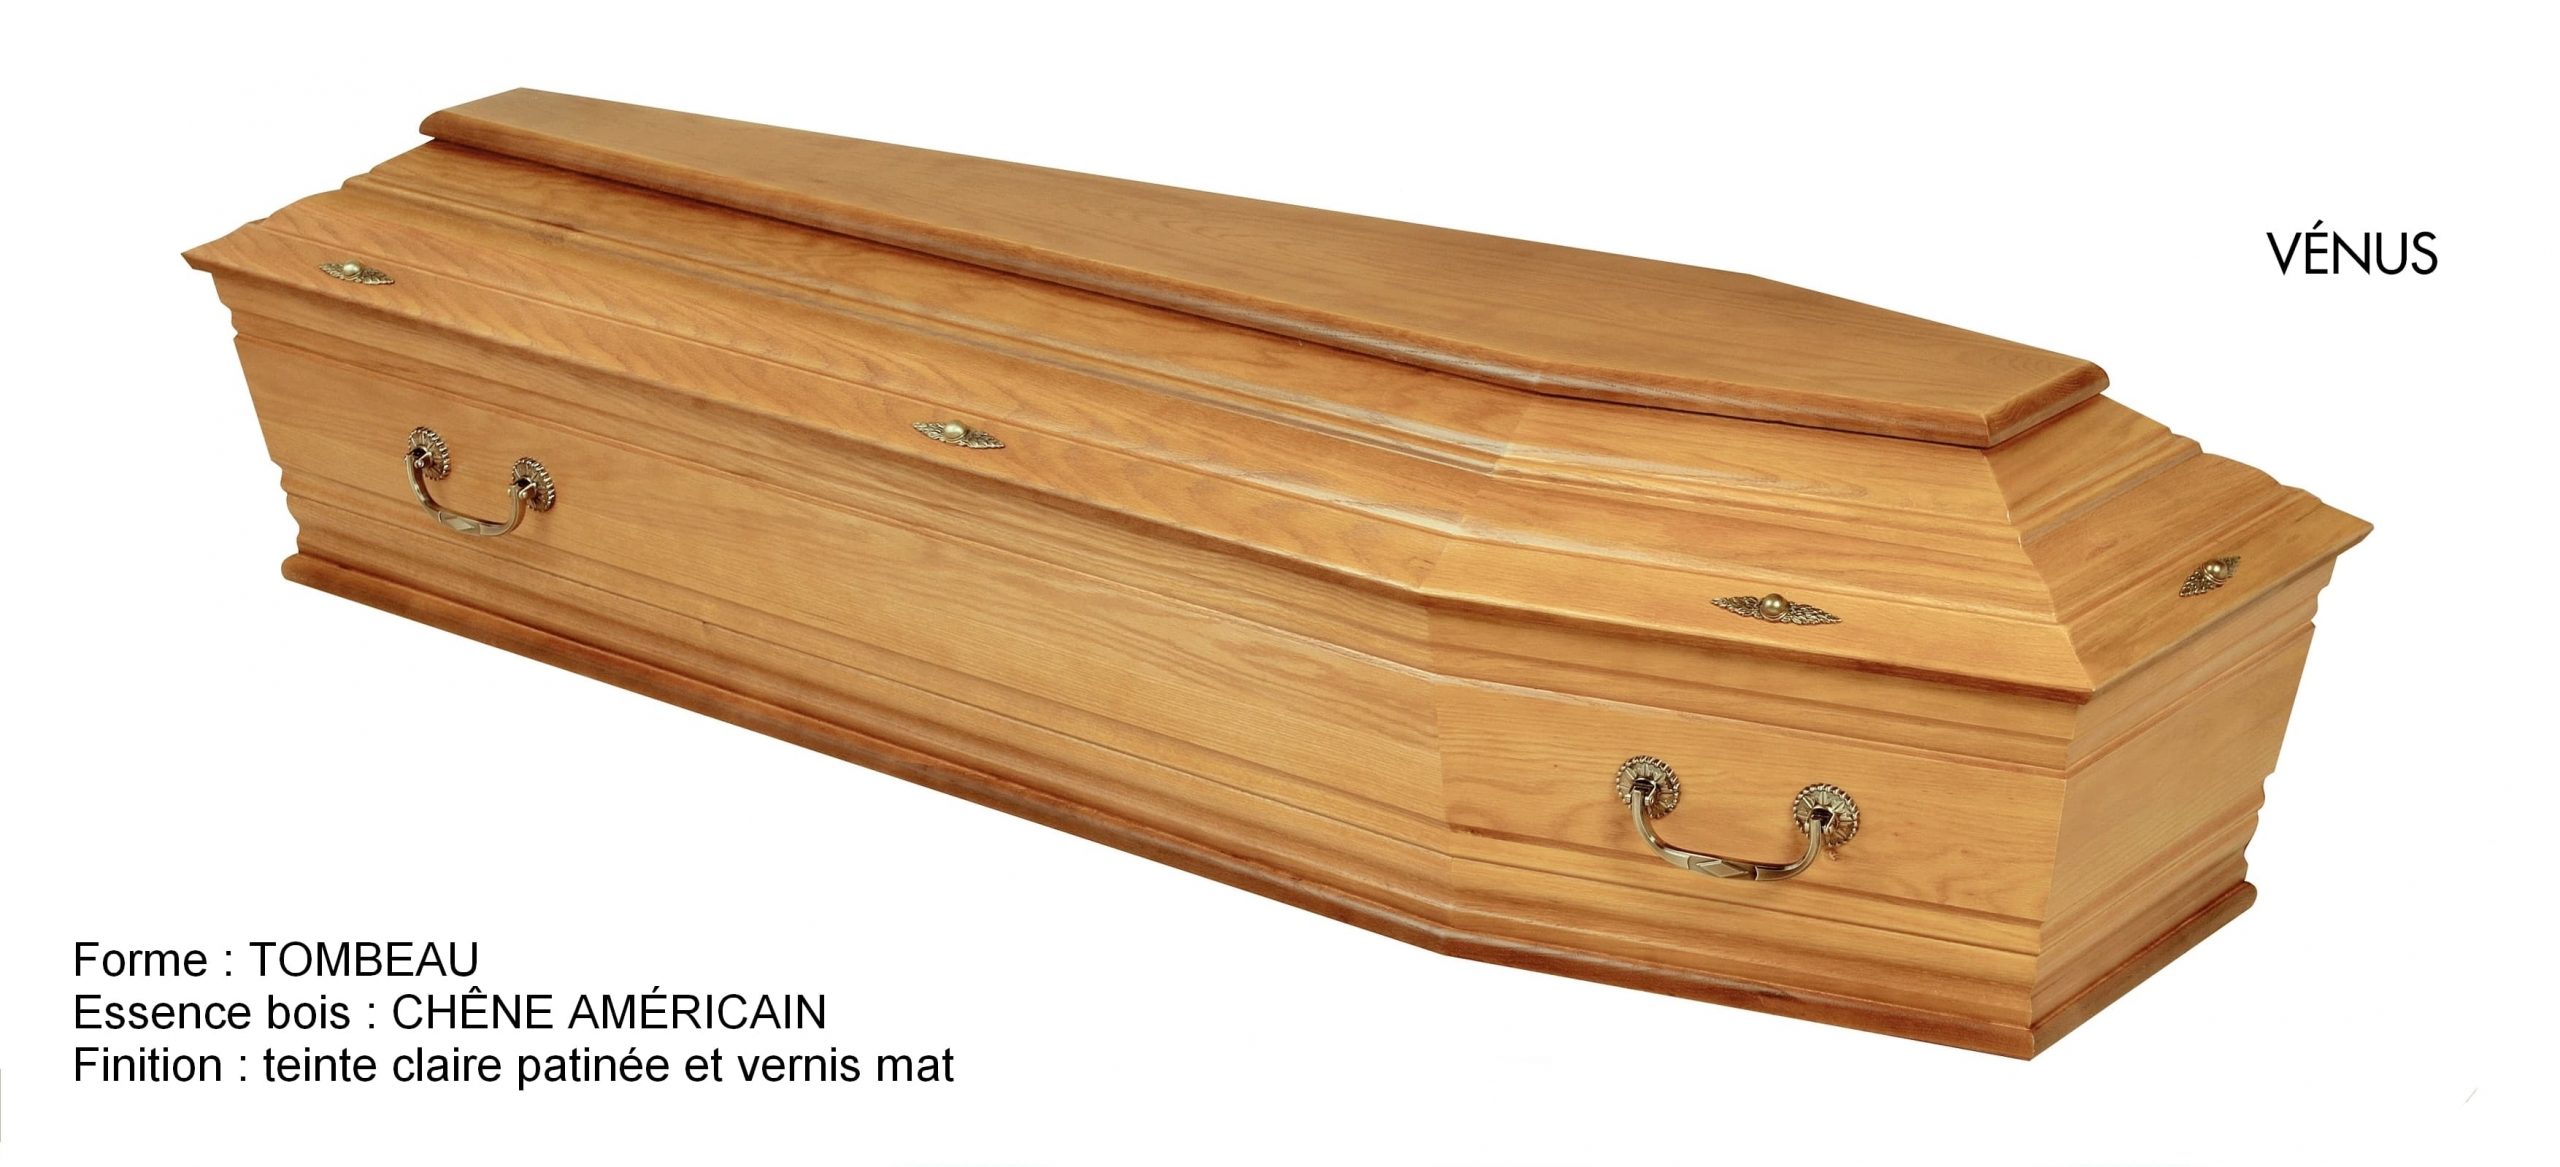 Cercueil VENUS